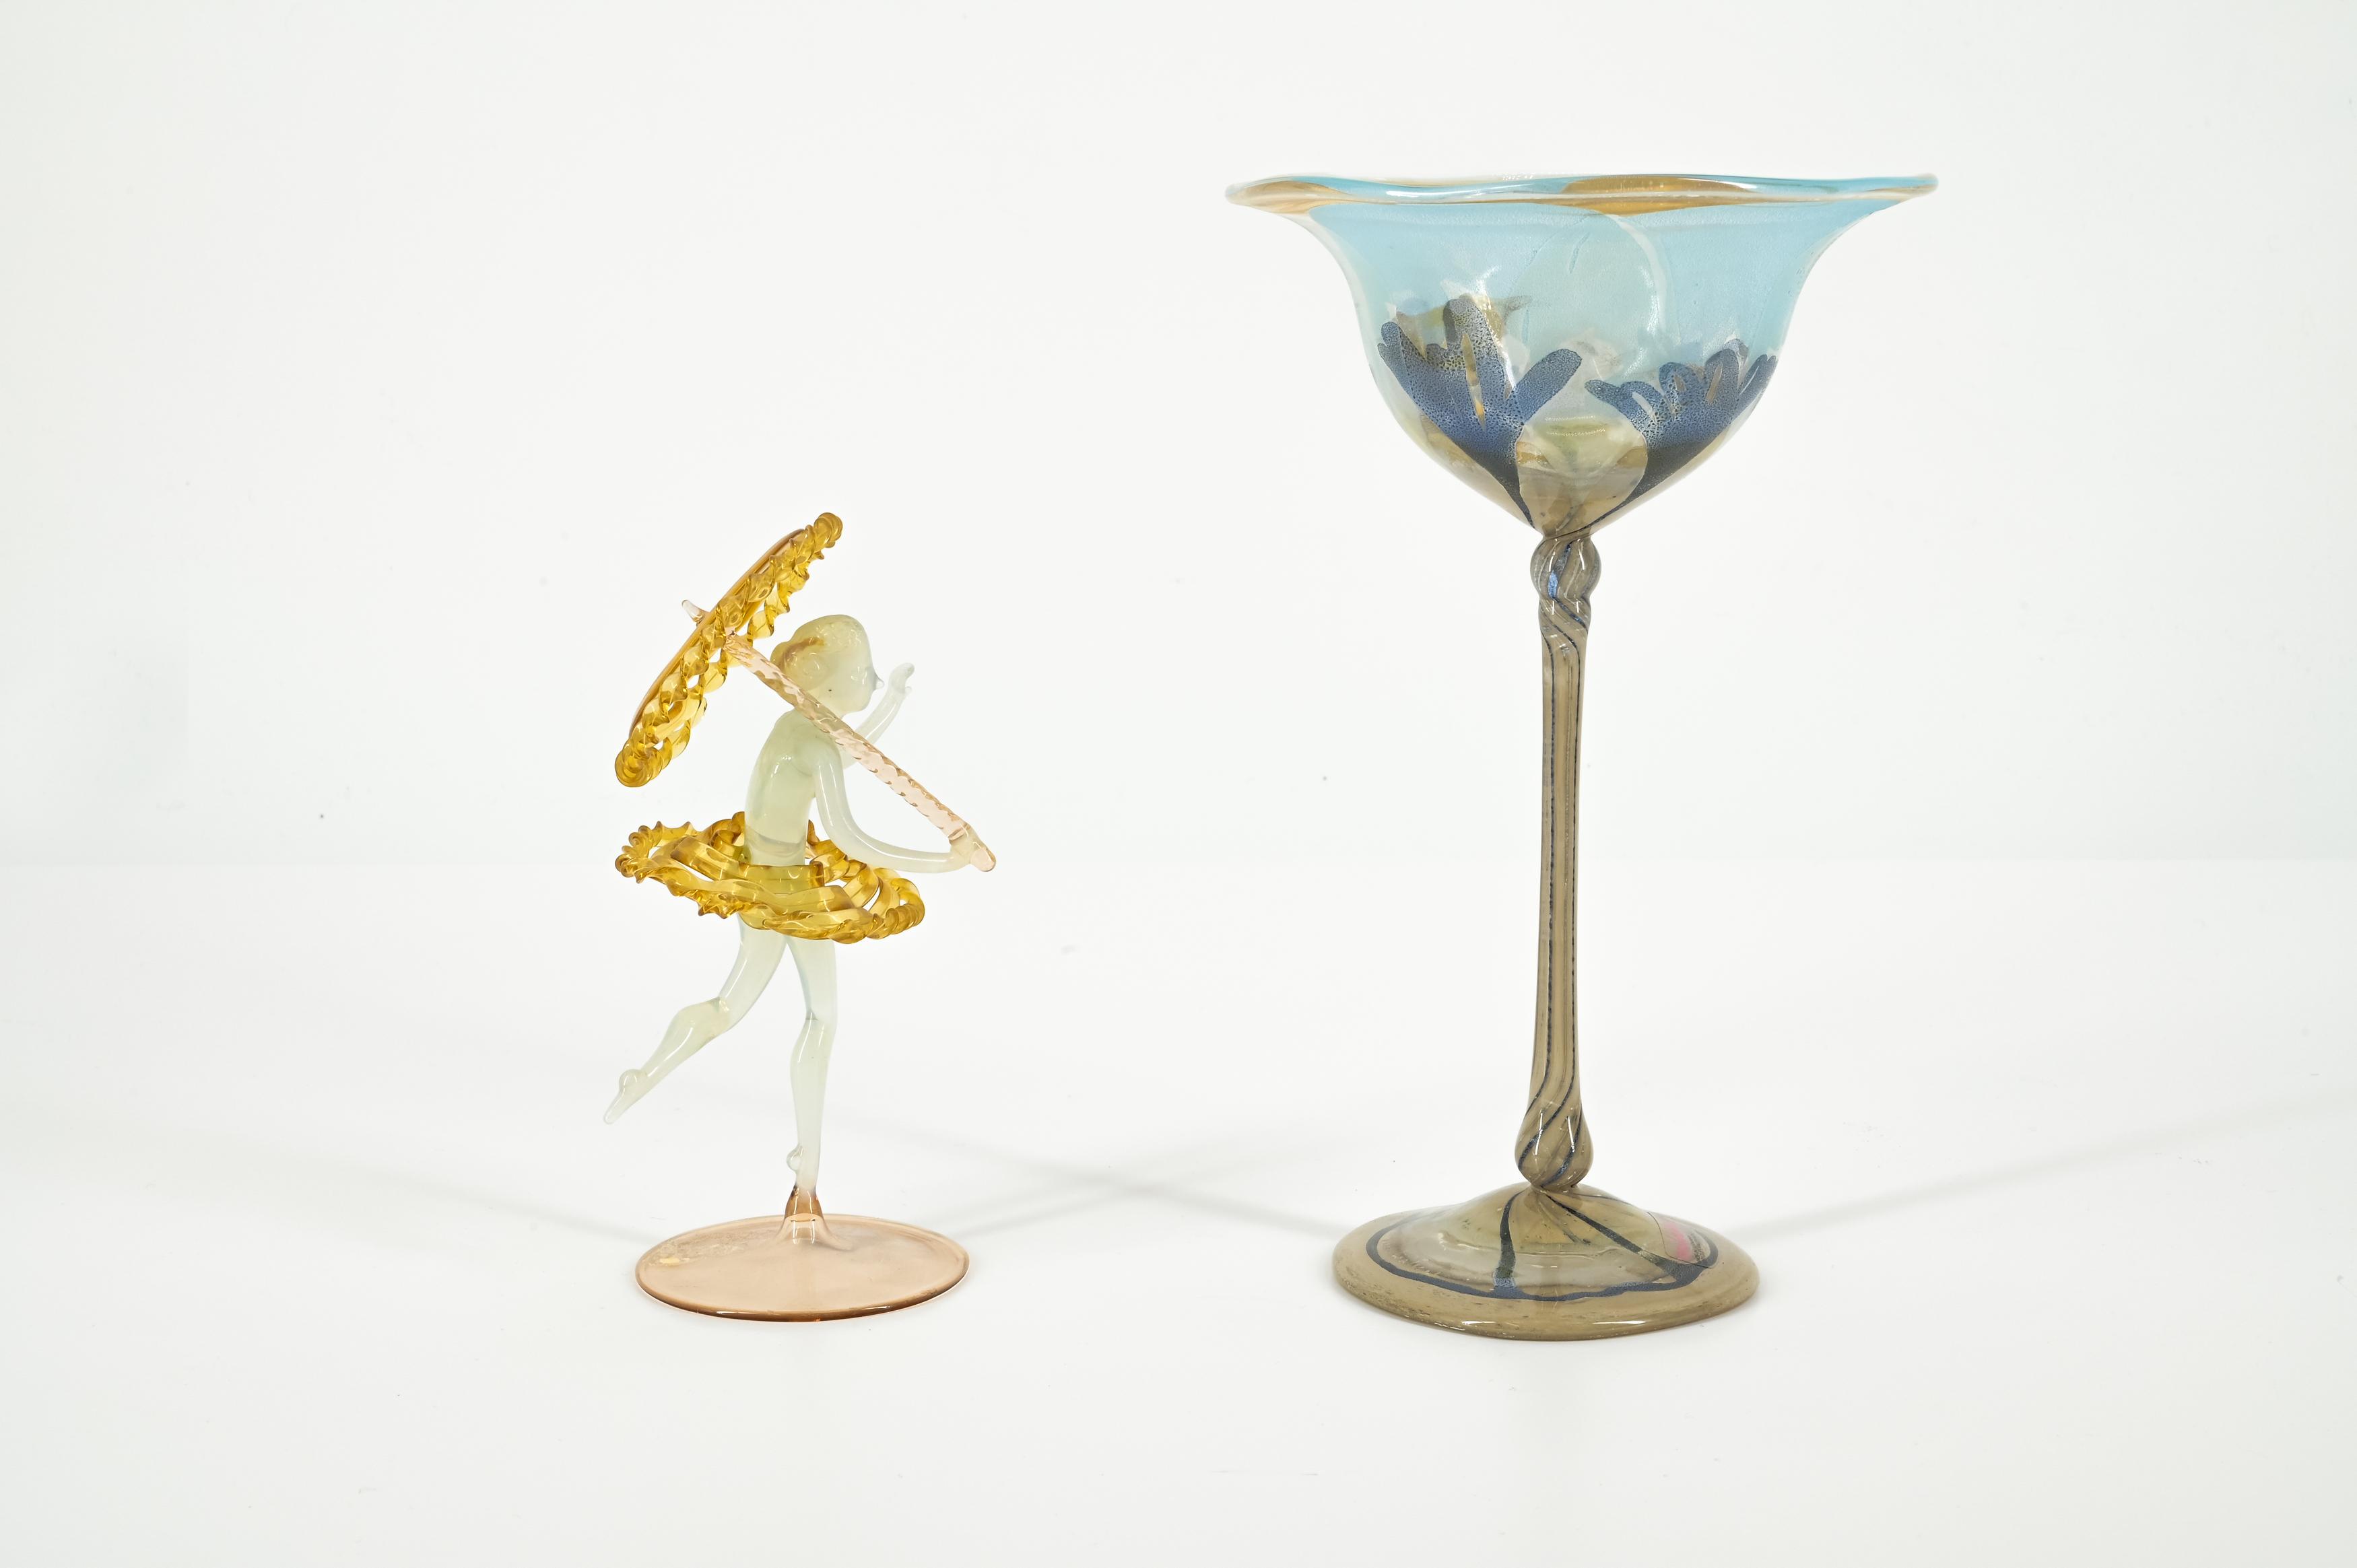 Frauenfigur mit Schirm, Stengelglas, zwei Karaffen - Image 18 of 20